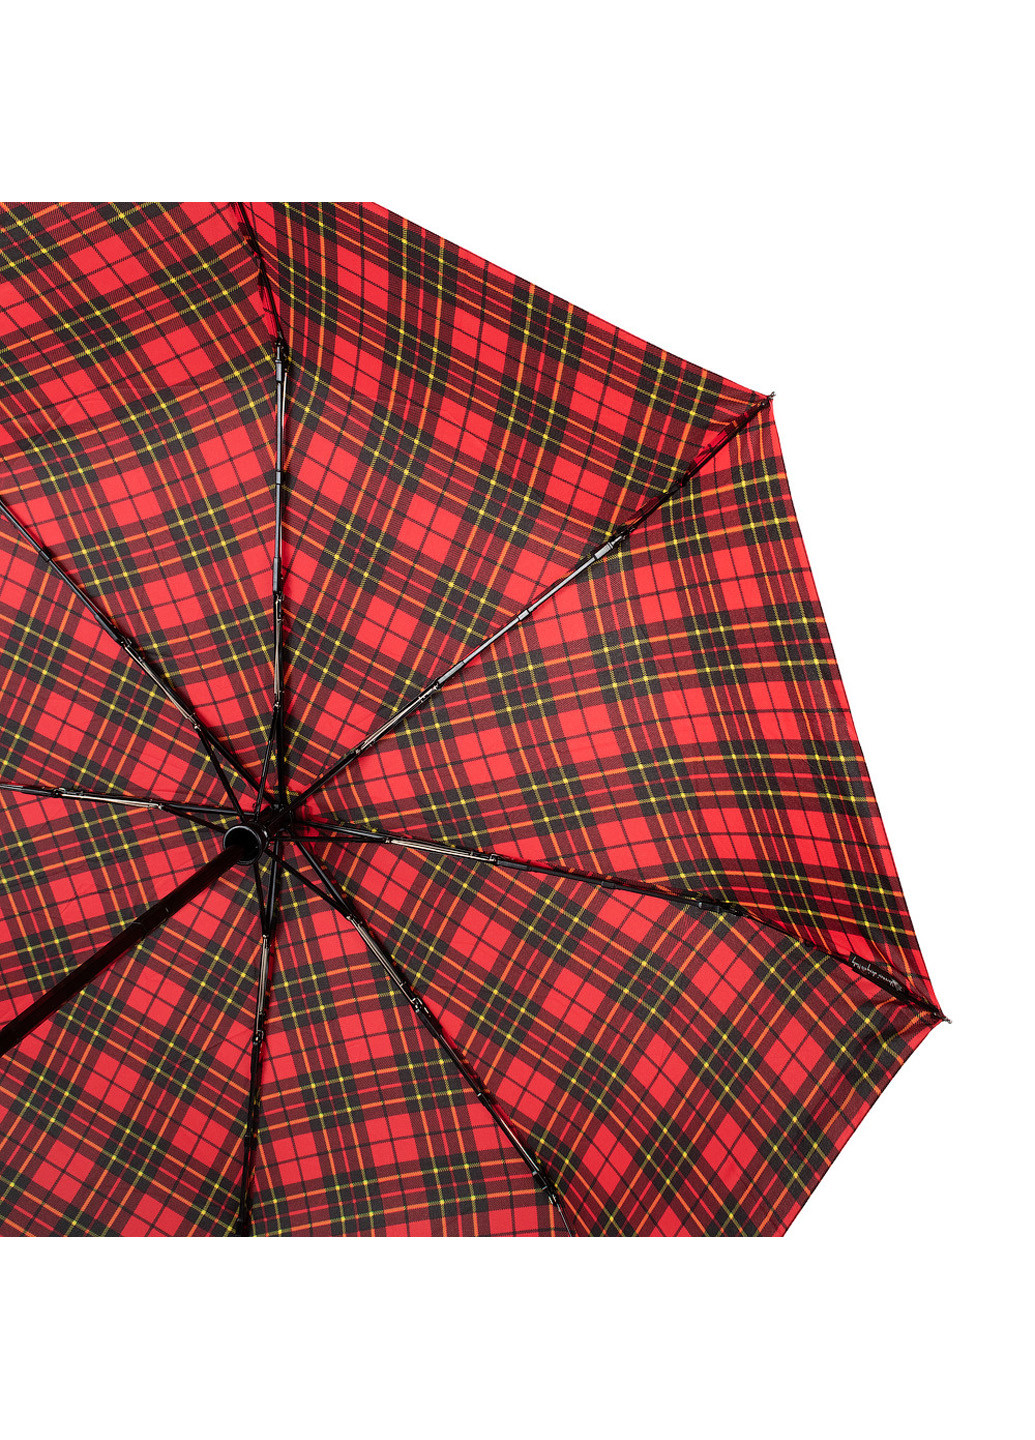 Жіночий складаний парасолька повний автомат 94 см H.DUE.O (198875416)